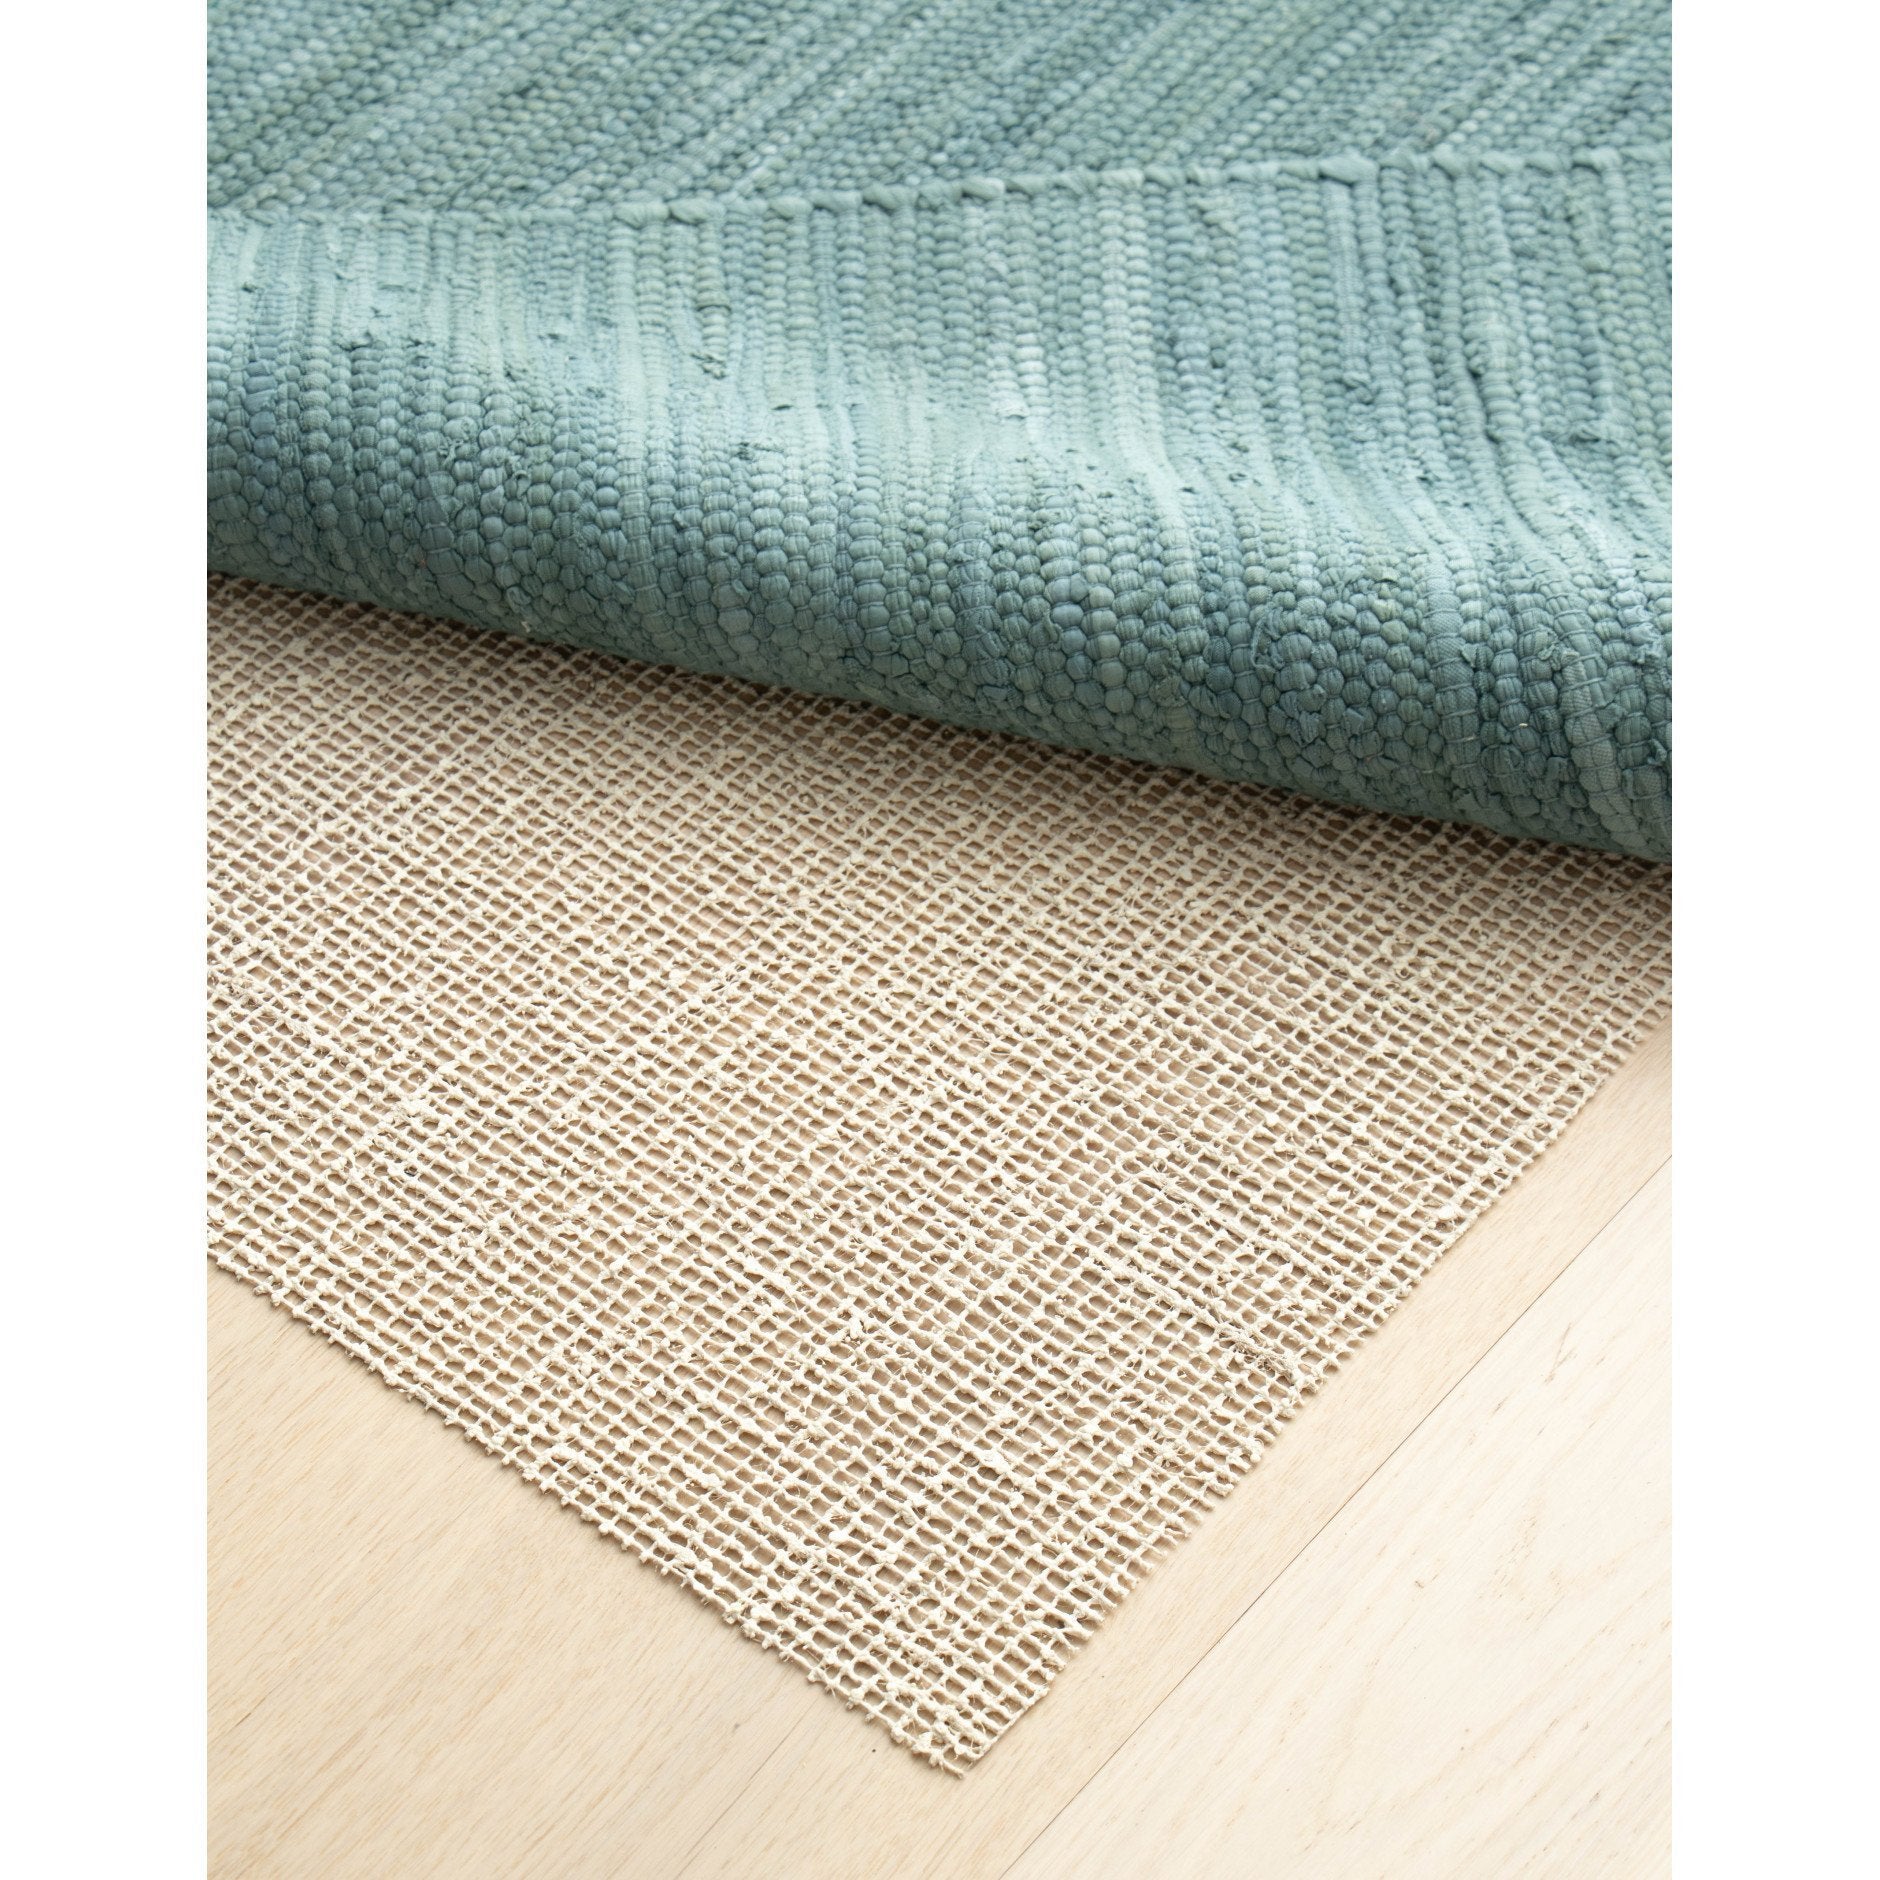 Tappeto solido tappetino anti -slip lattice organico e iuta, 130 x 190 cm